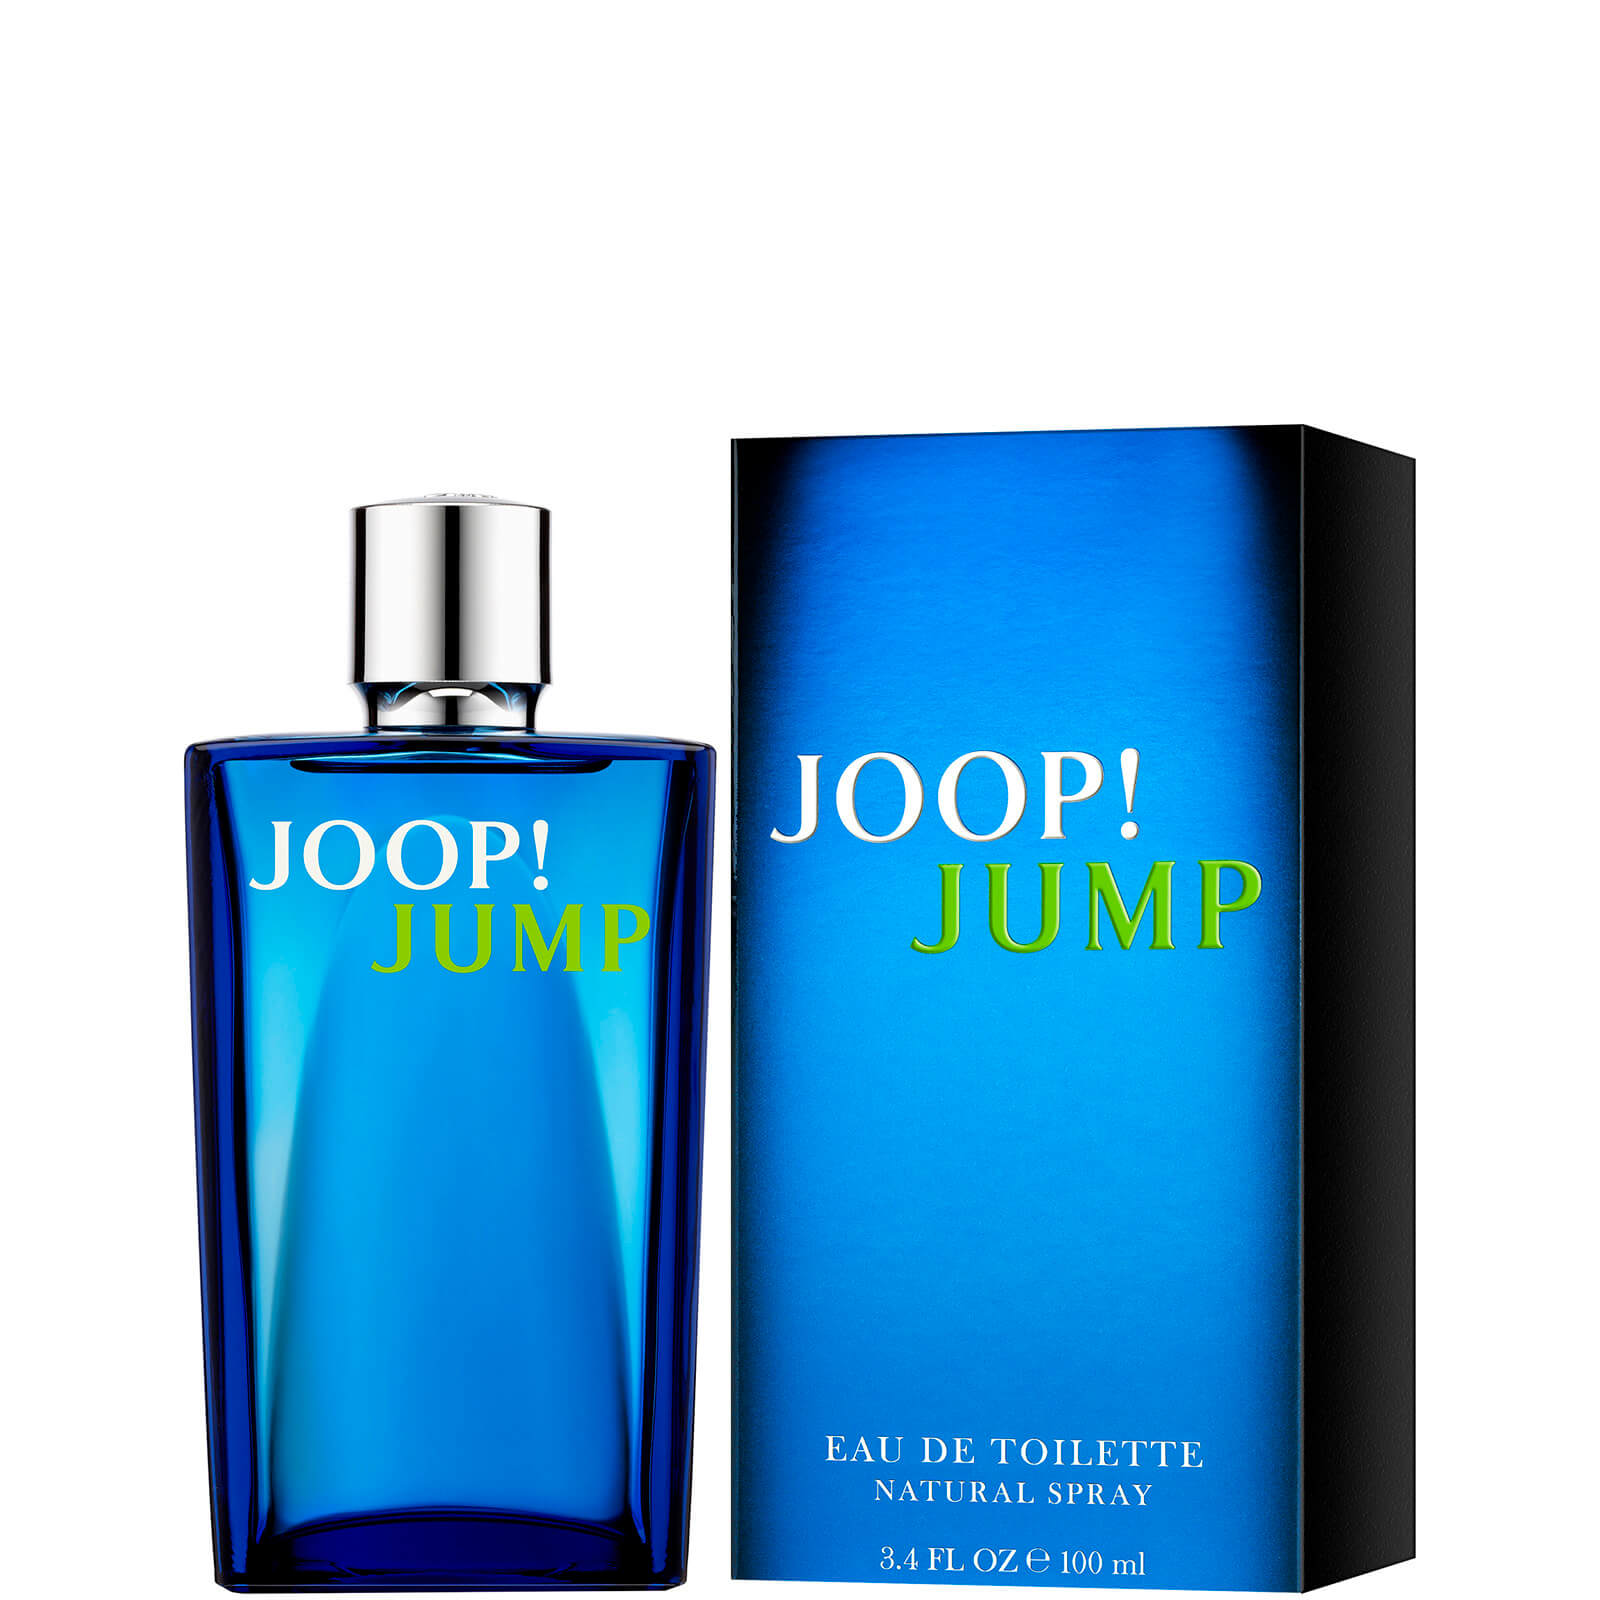 JOOP! Jump eau de toilette - 100 ml